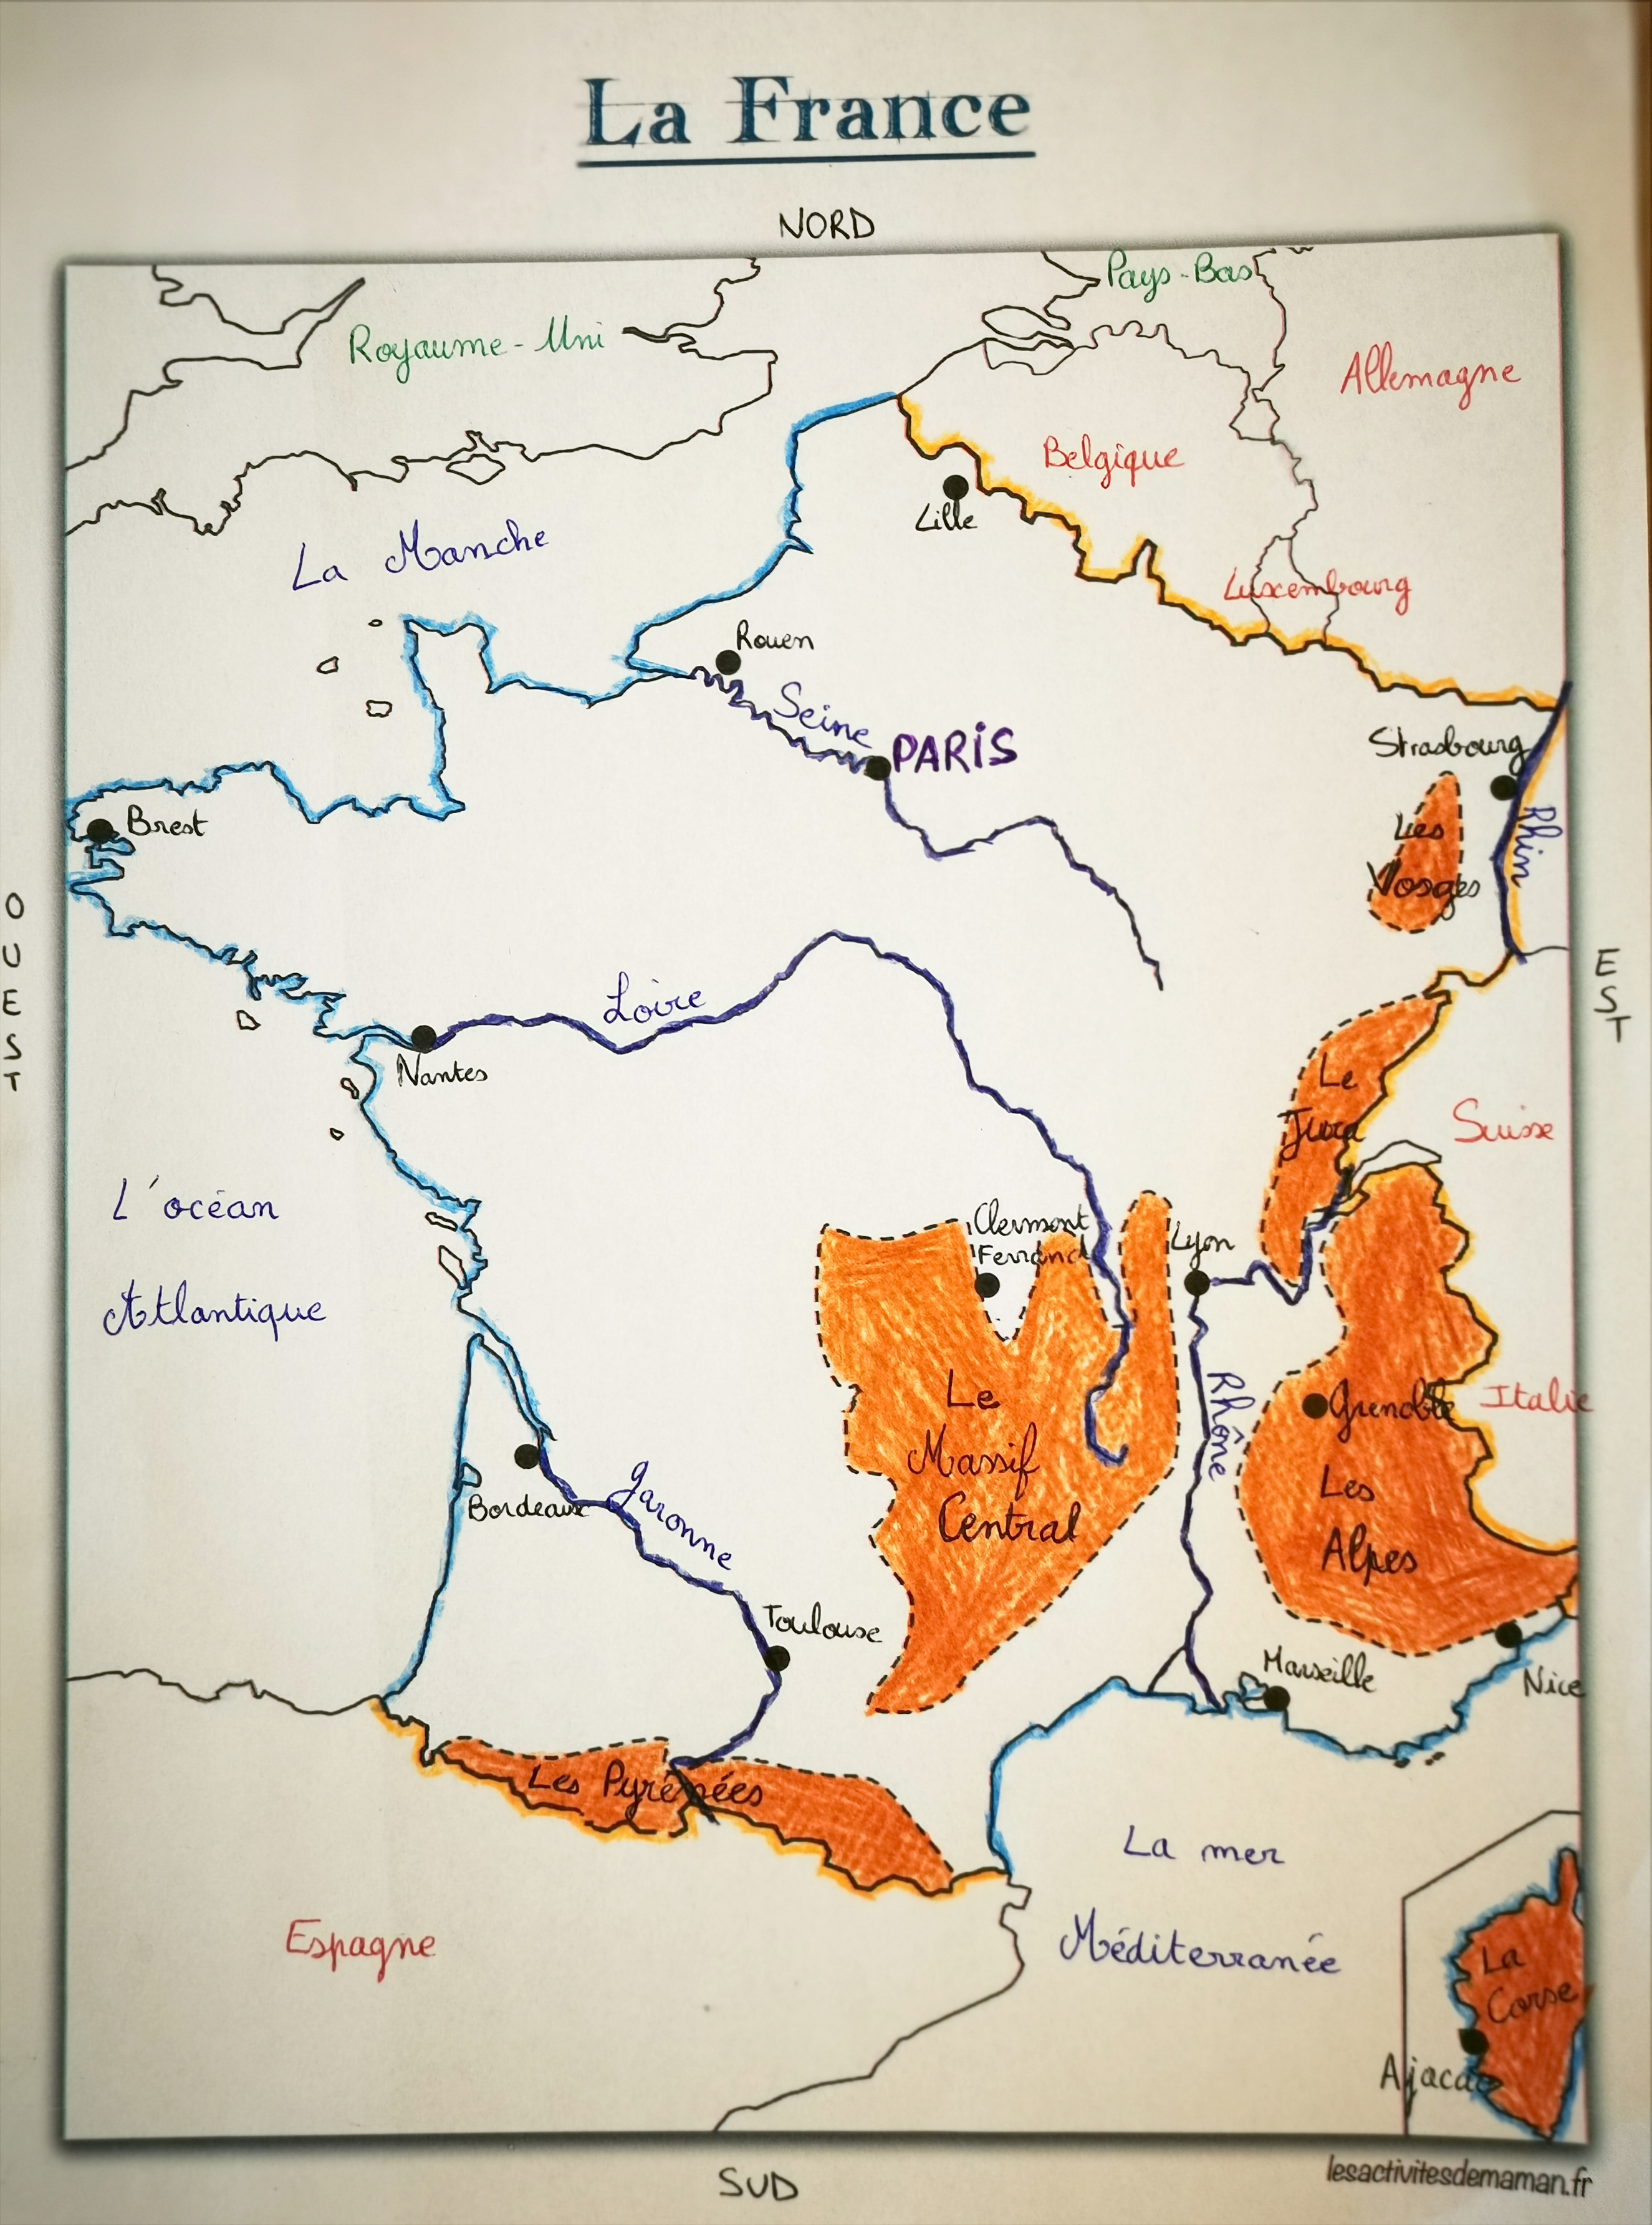 Carte de France vierge à imprimer  Fond de carte avec les régions et les  départements français